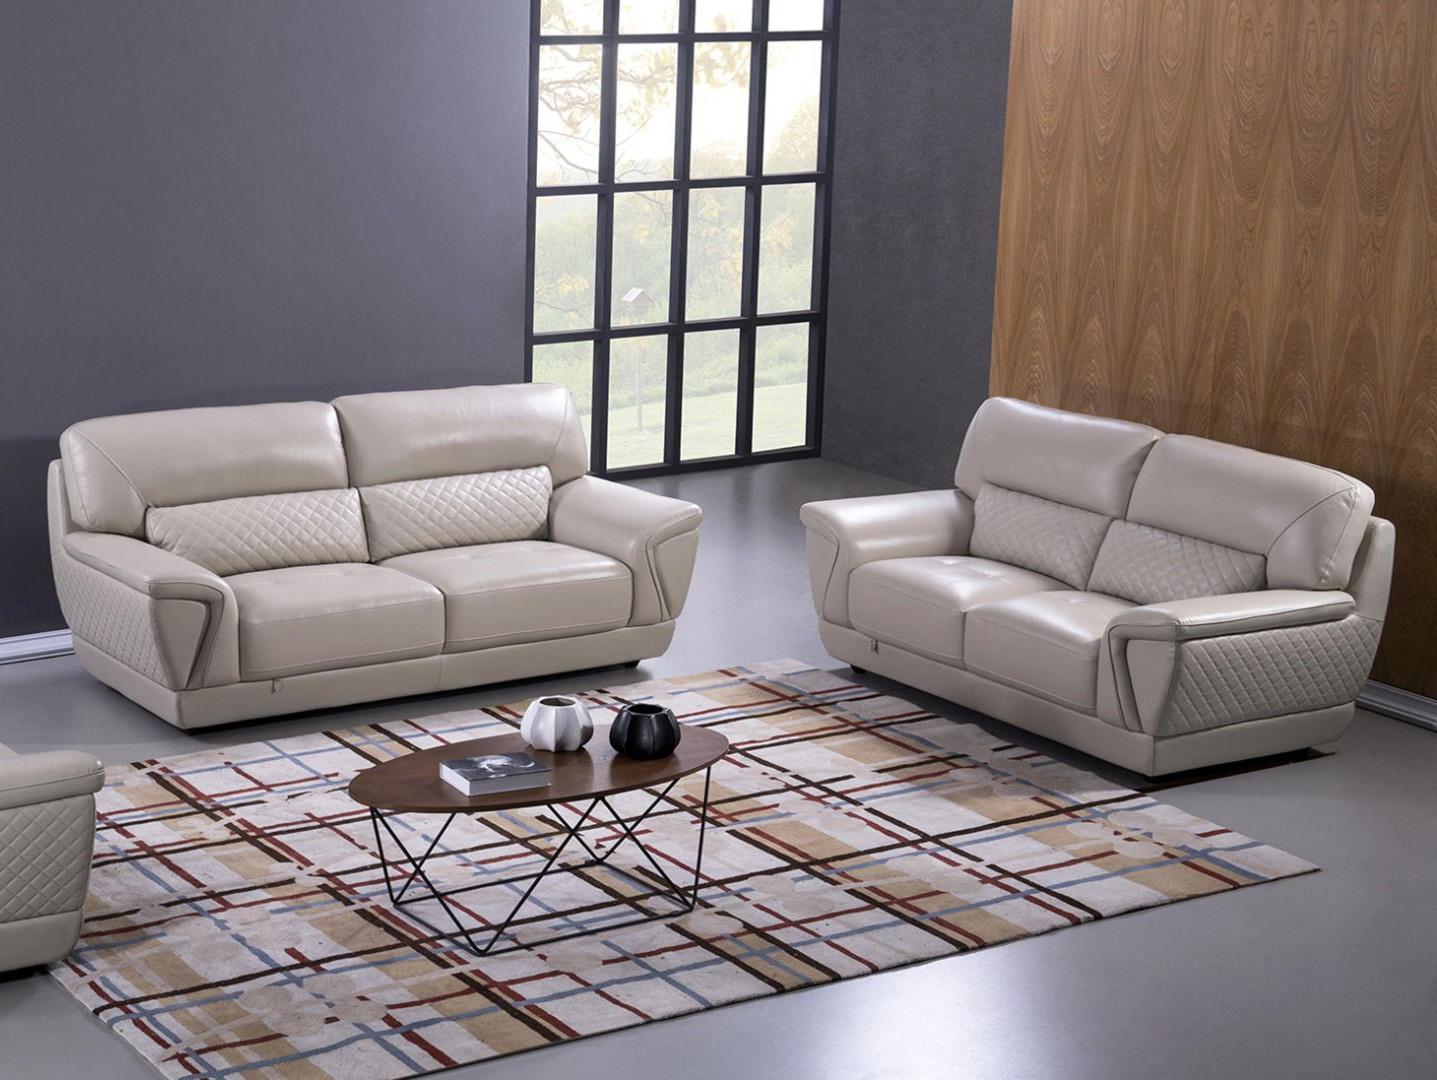 Contemporary, Modern Sofa Set EK099-LG EK099-LG- Set-2 in Light Gray Italian Leather